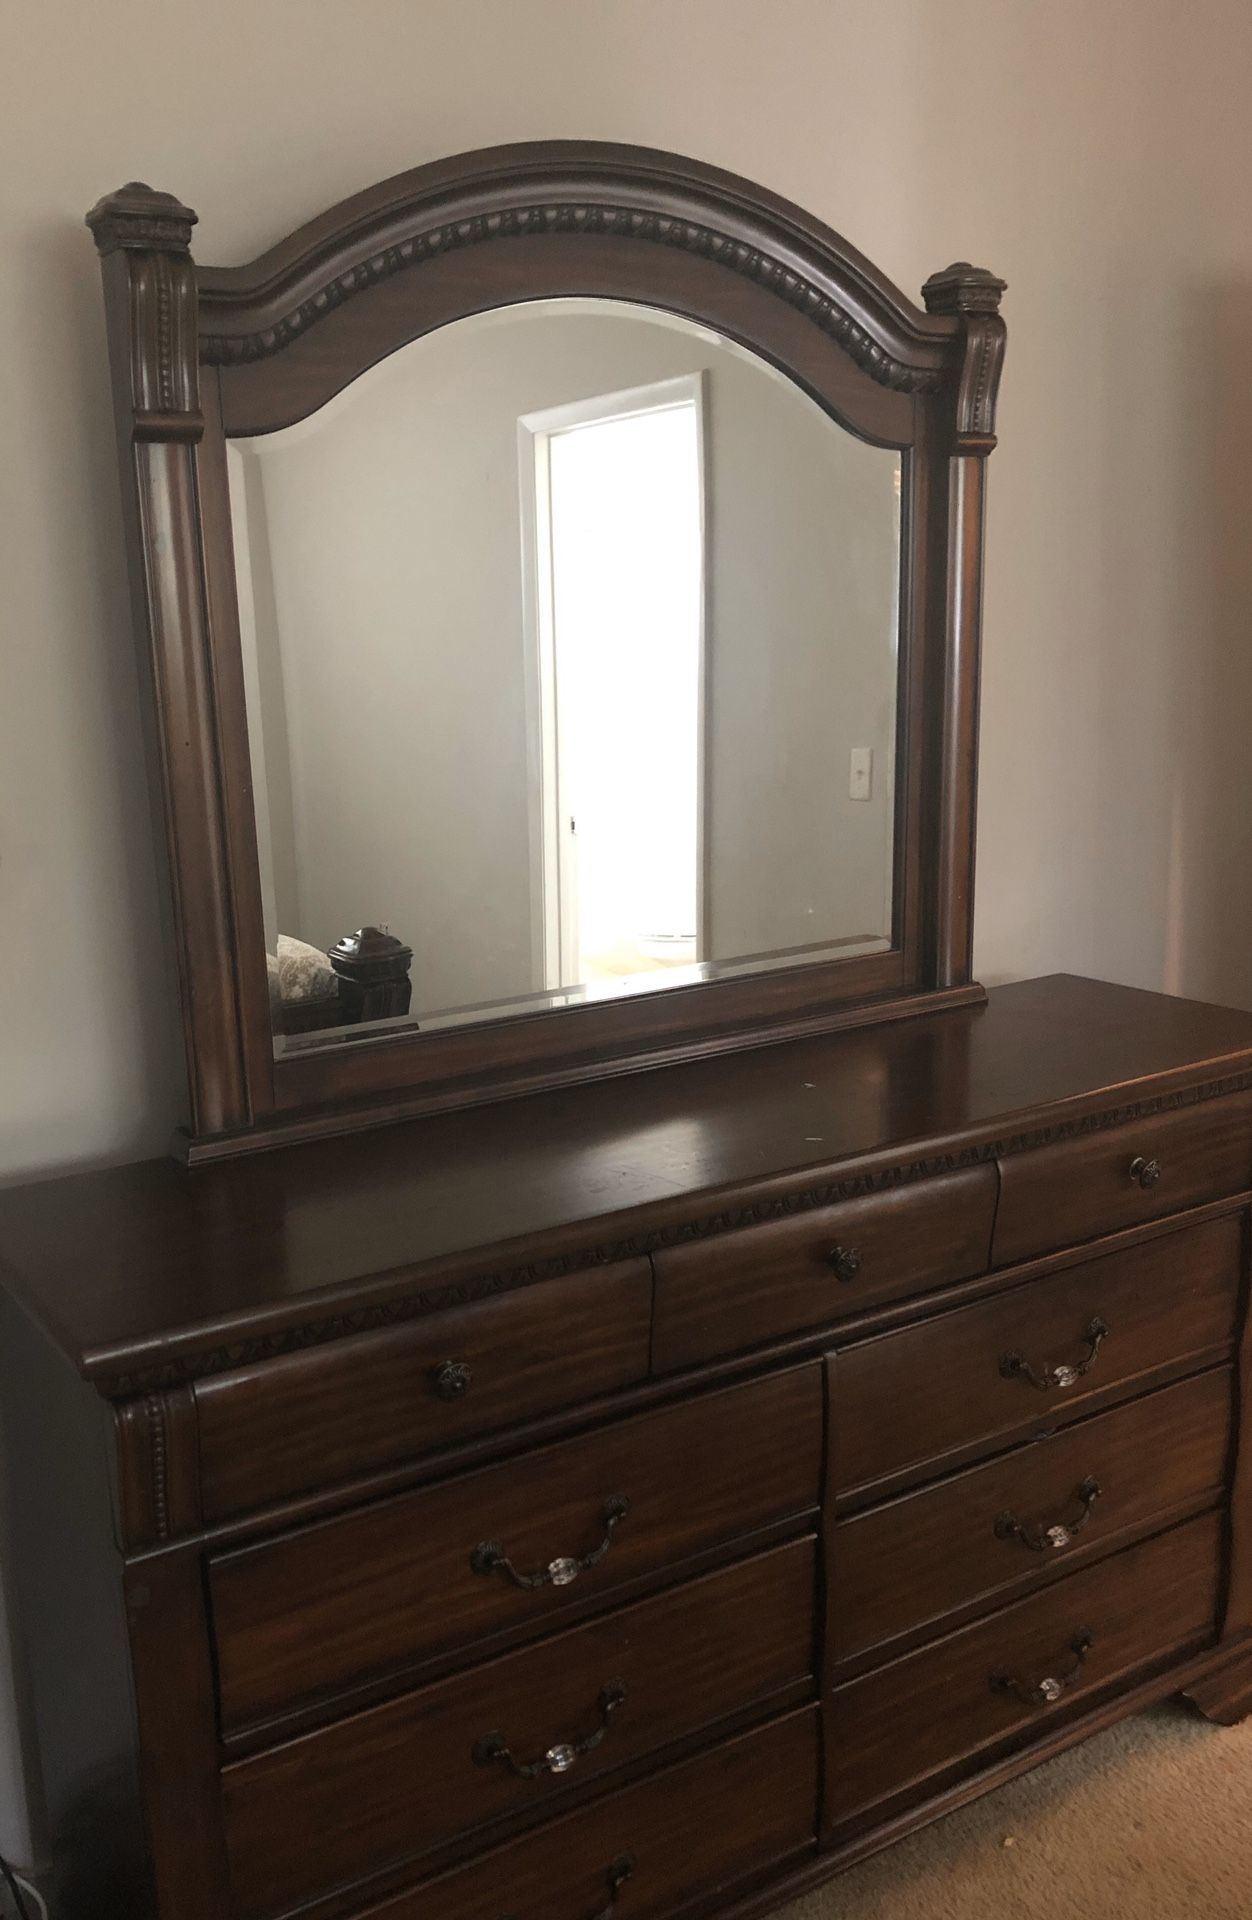 Dresser and mirror